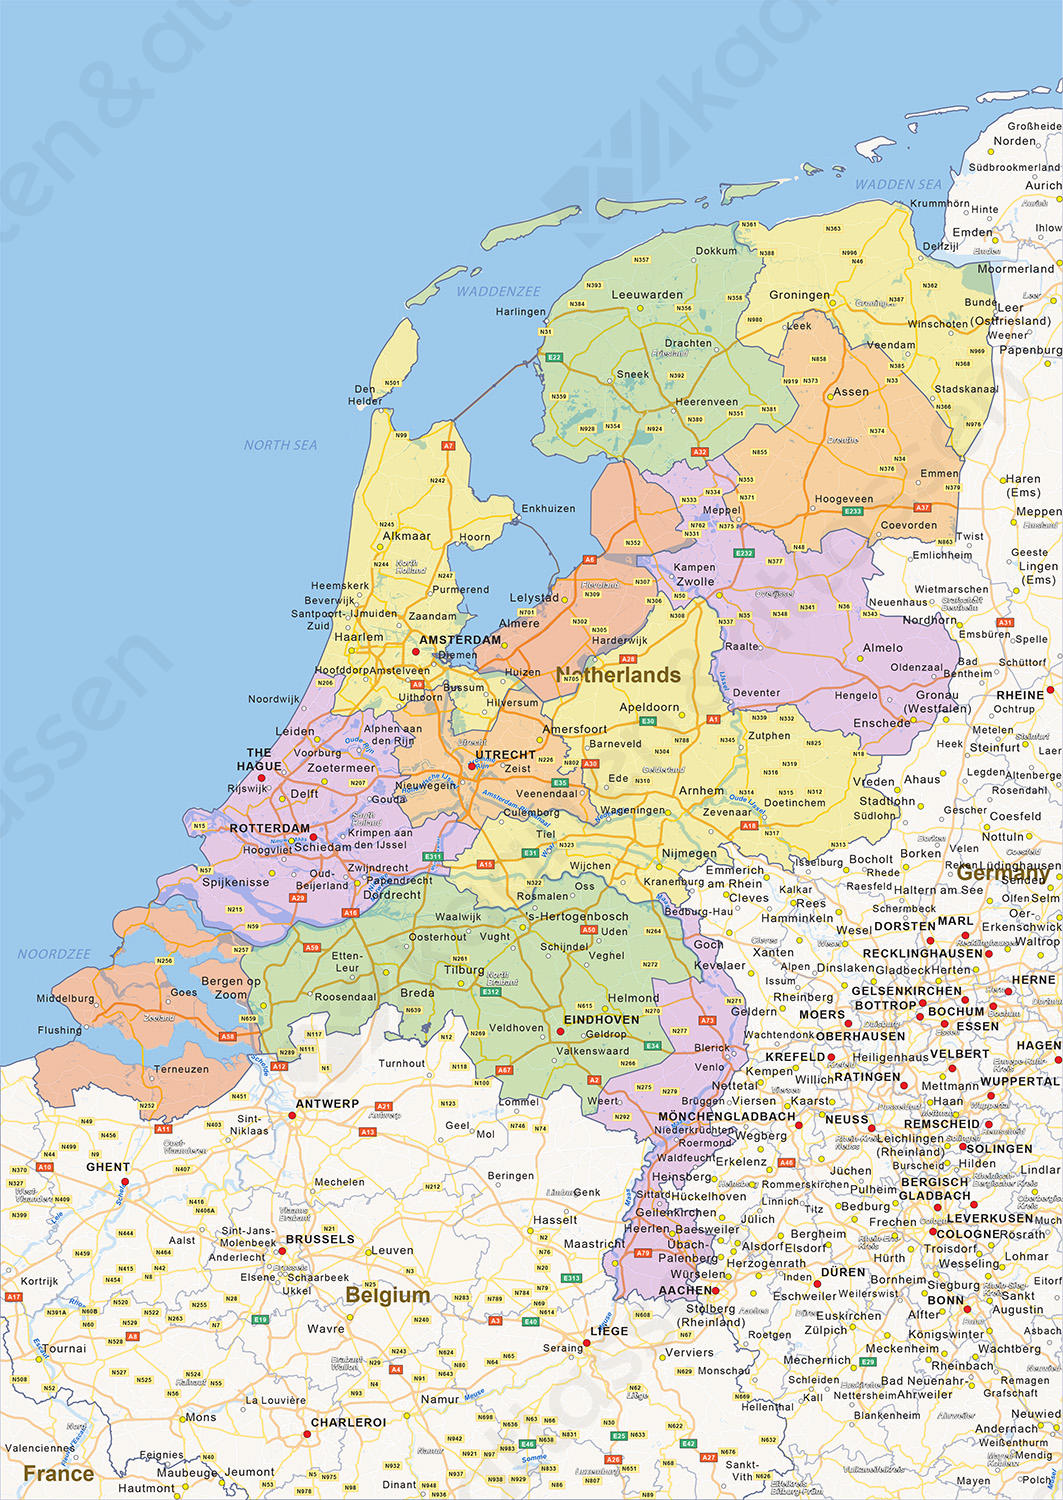 menu dealer dump Digitale Staatkundige landkaart Nederland 1452 | Kaarten en Atlassen.nl